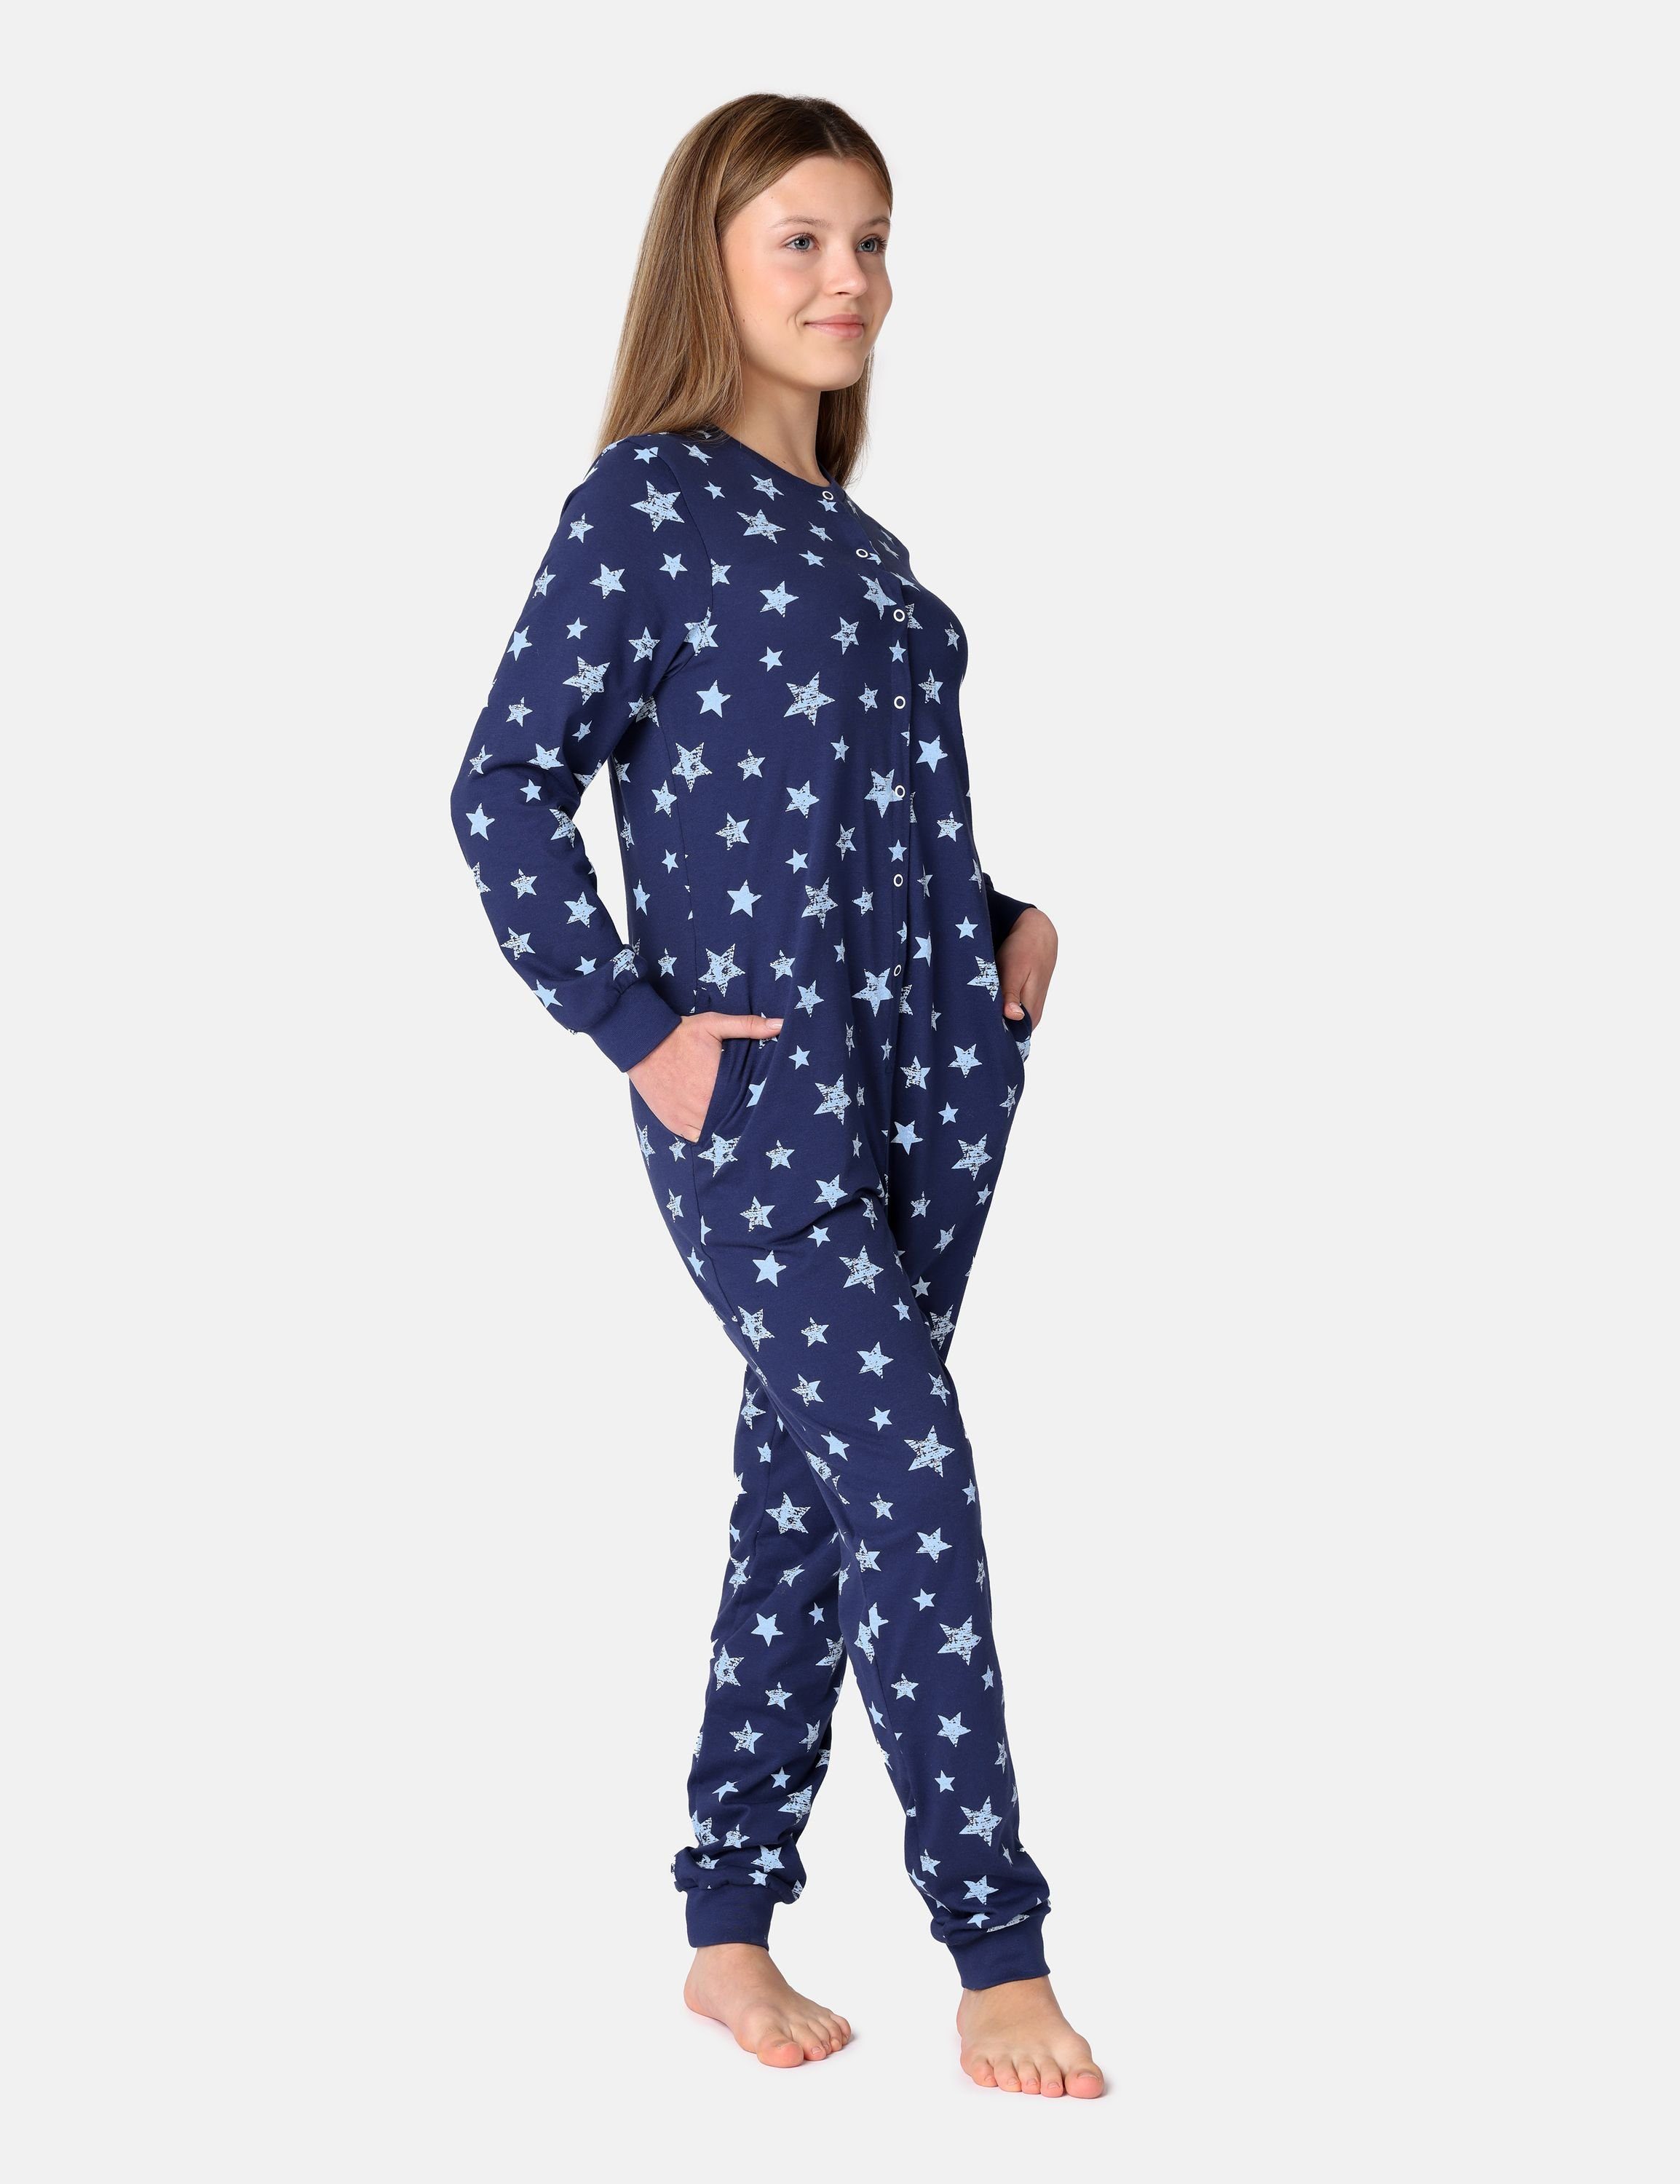 Dunkelblau/Blau Style Schlafanzug Schlafoverall Sterne Mädchen Jugend Schlafanzug Merry MS10-335